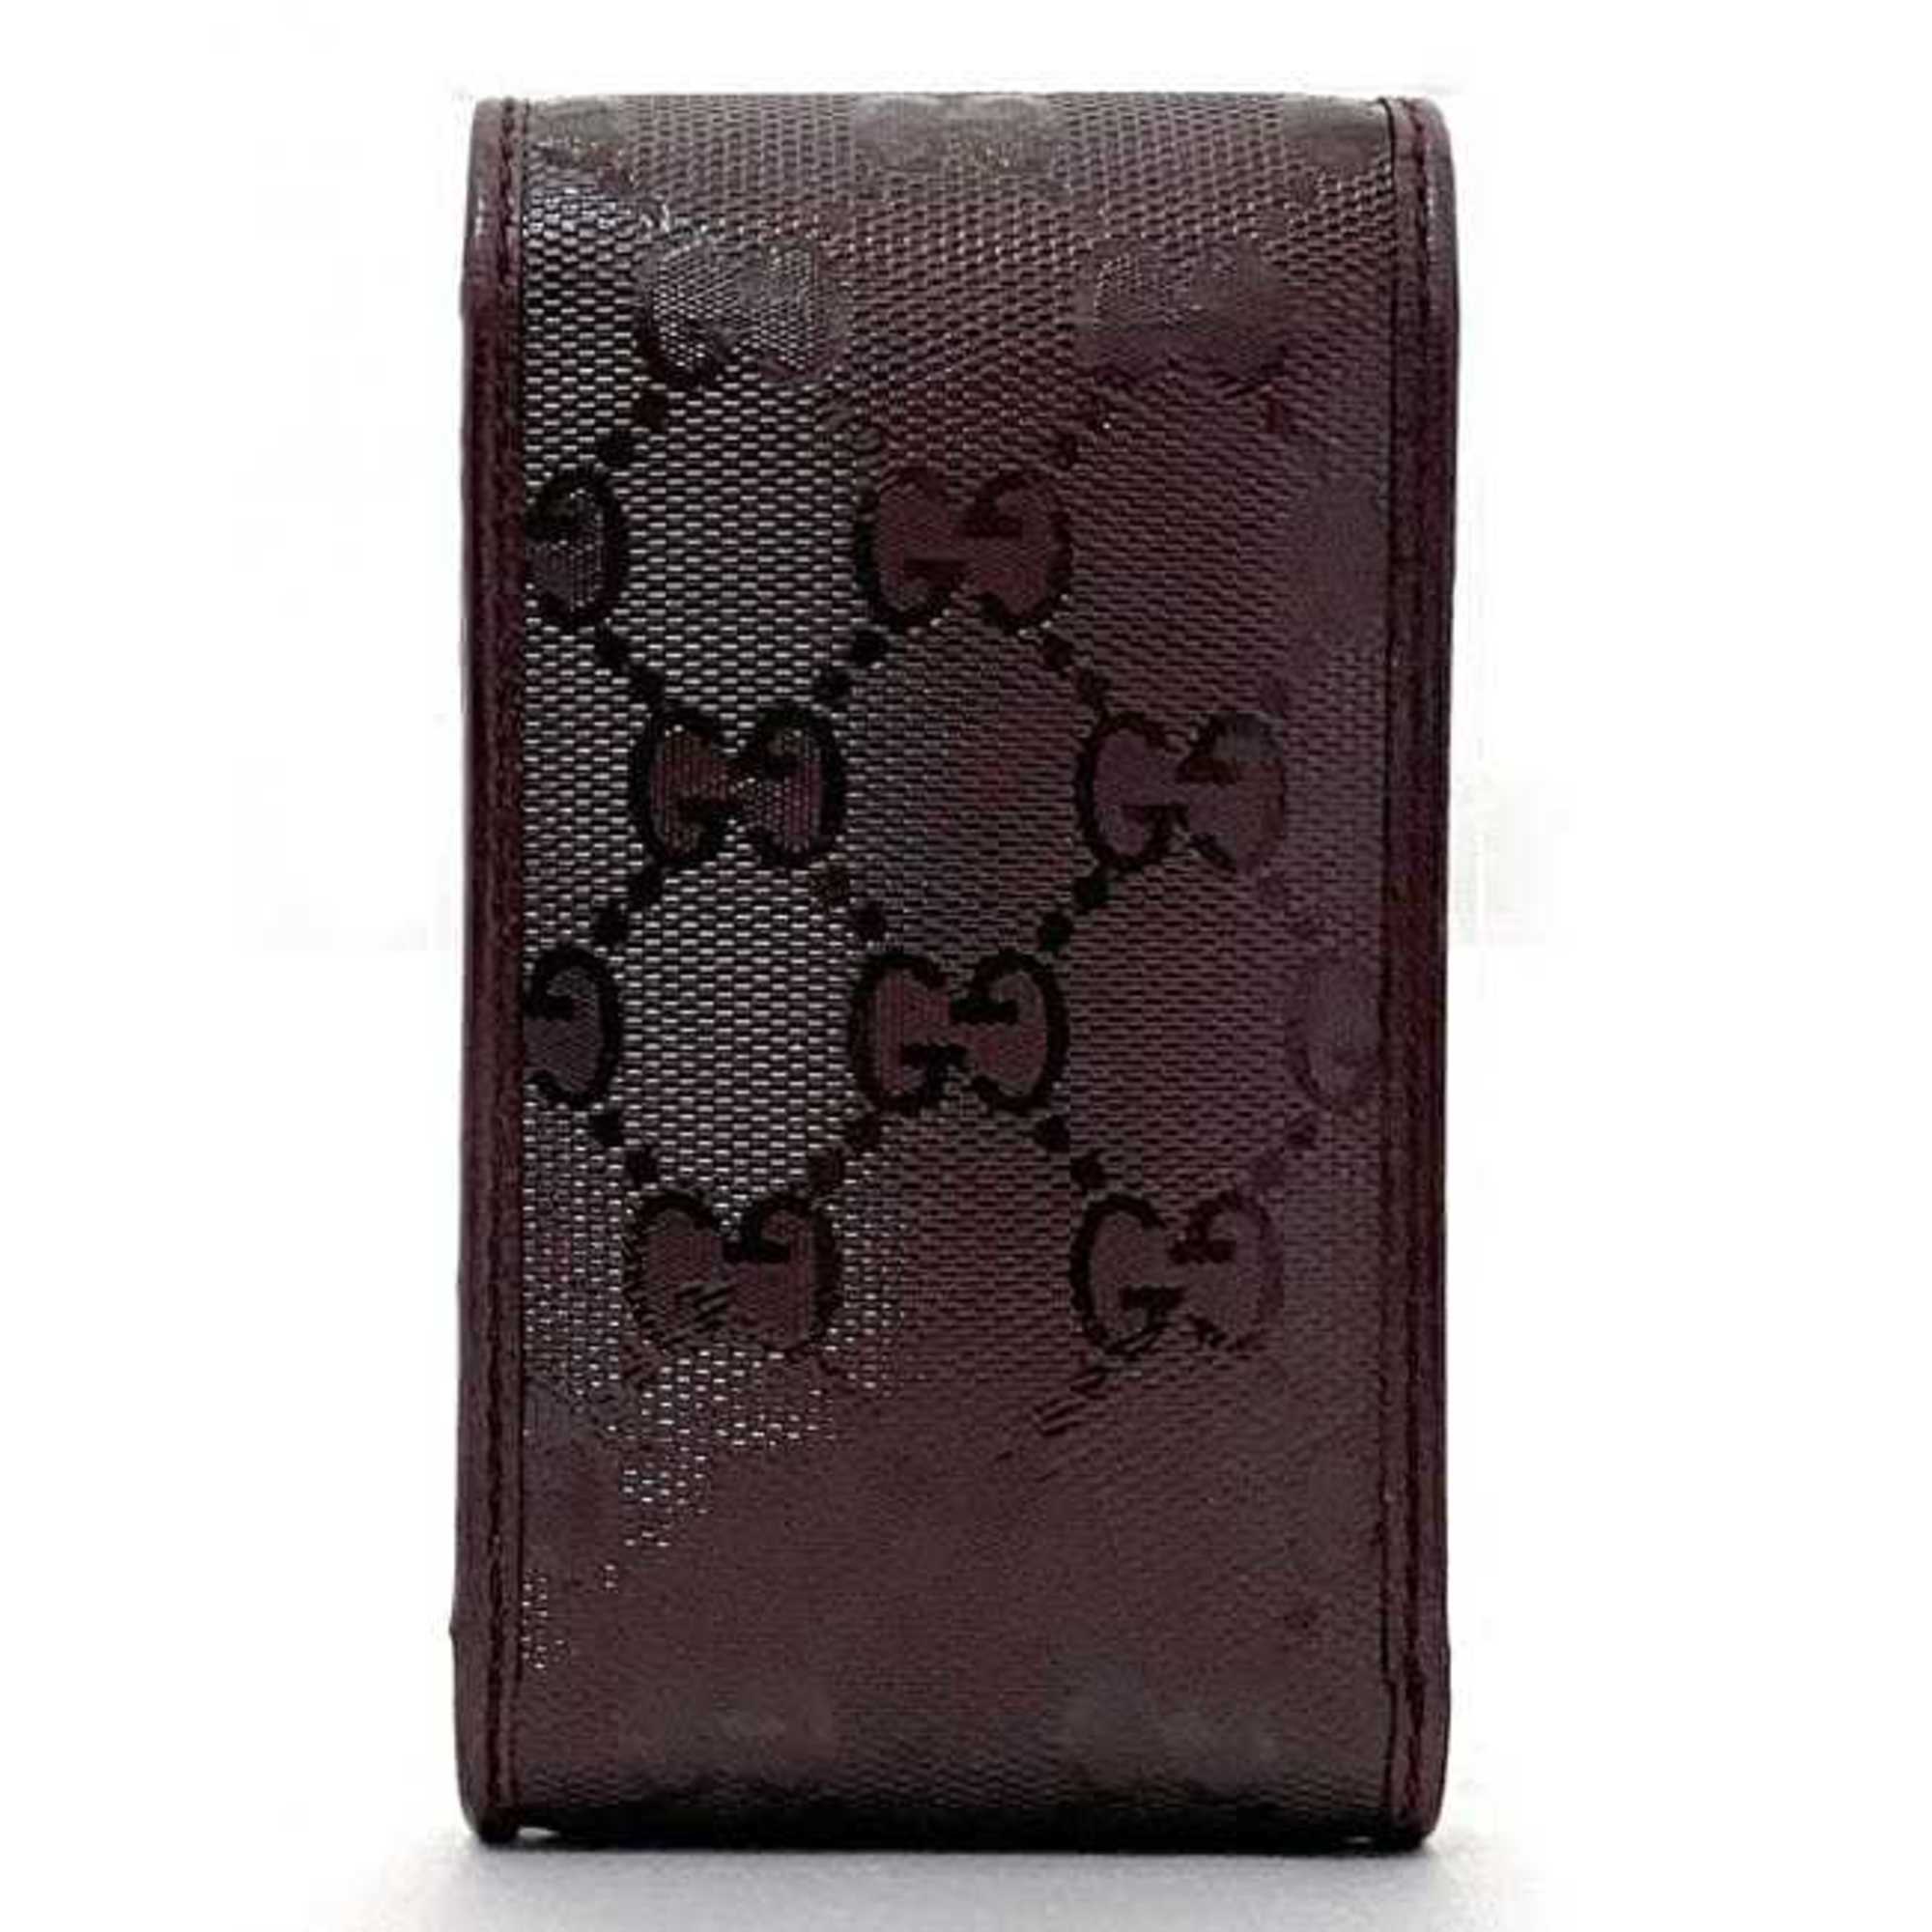 Gucci Cigarette Case Bordeaux Ardoise 181716 ec-20640 Tobacco PVC Leather GUCCI iQOS Compact Men's Women's